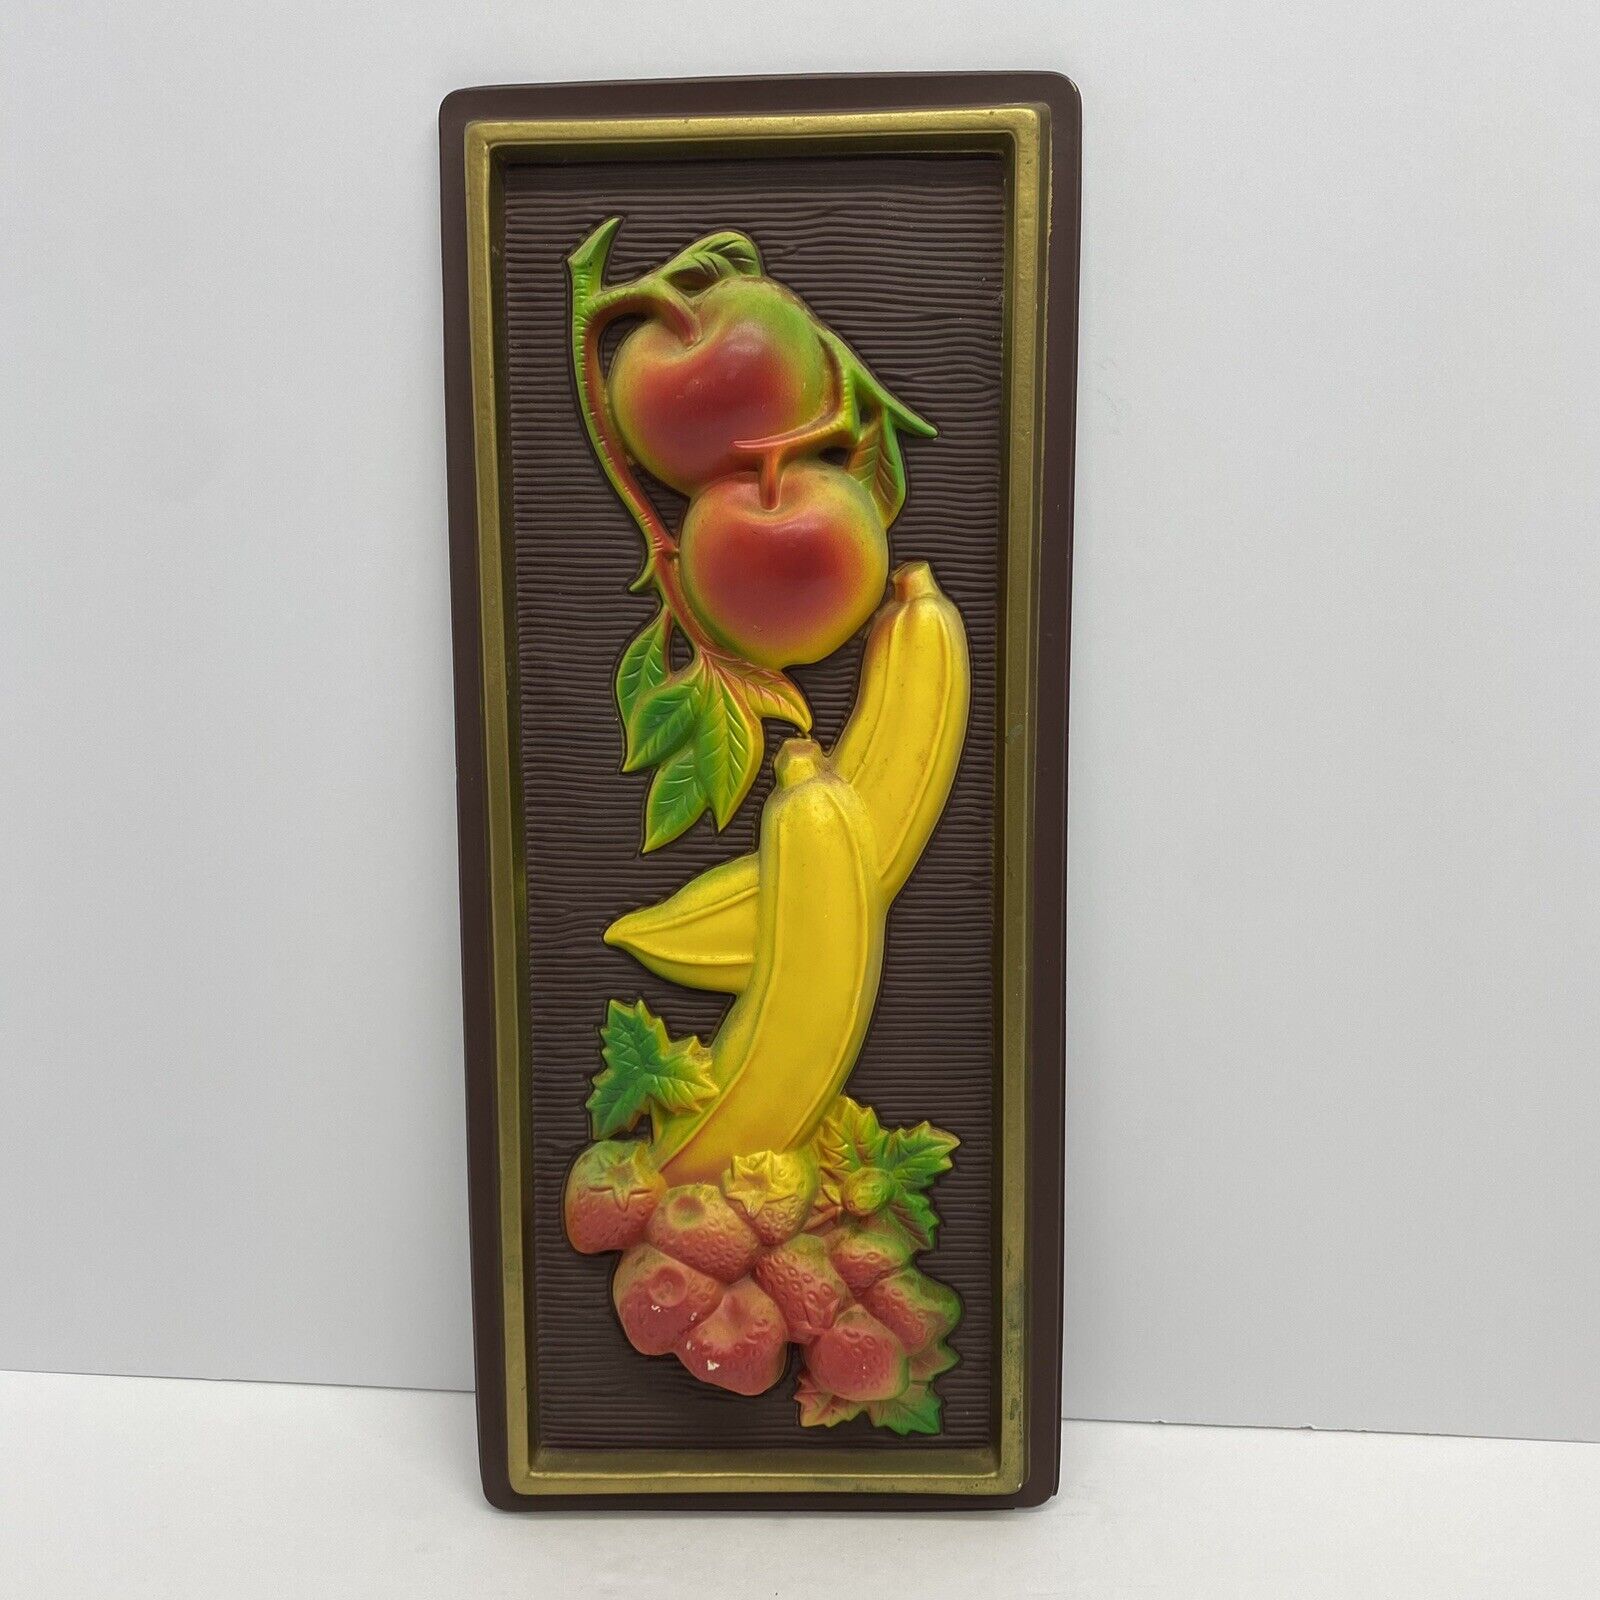 1968 Miller Studio Fruit Theme Wall Plaque Molded Plastic MCM VTG Banana Retro